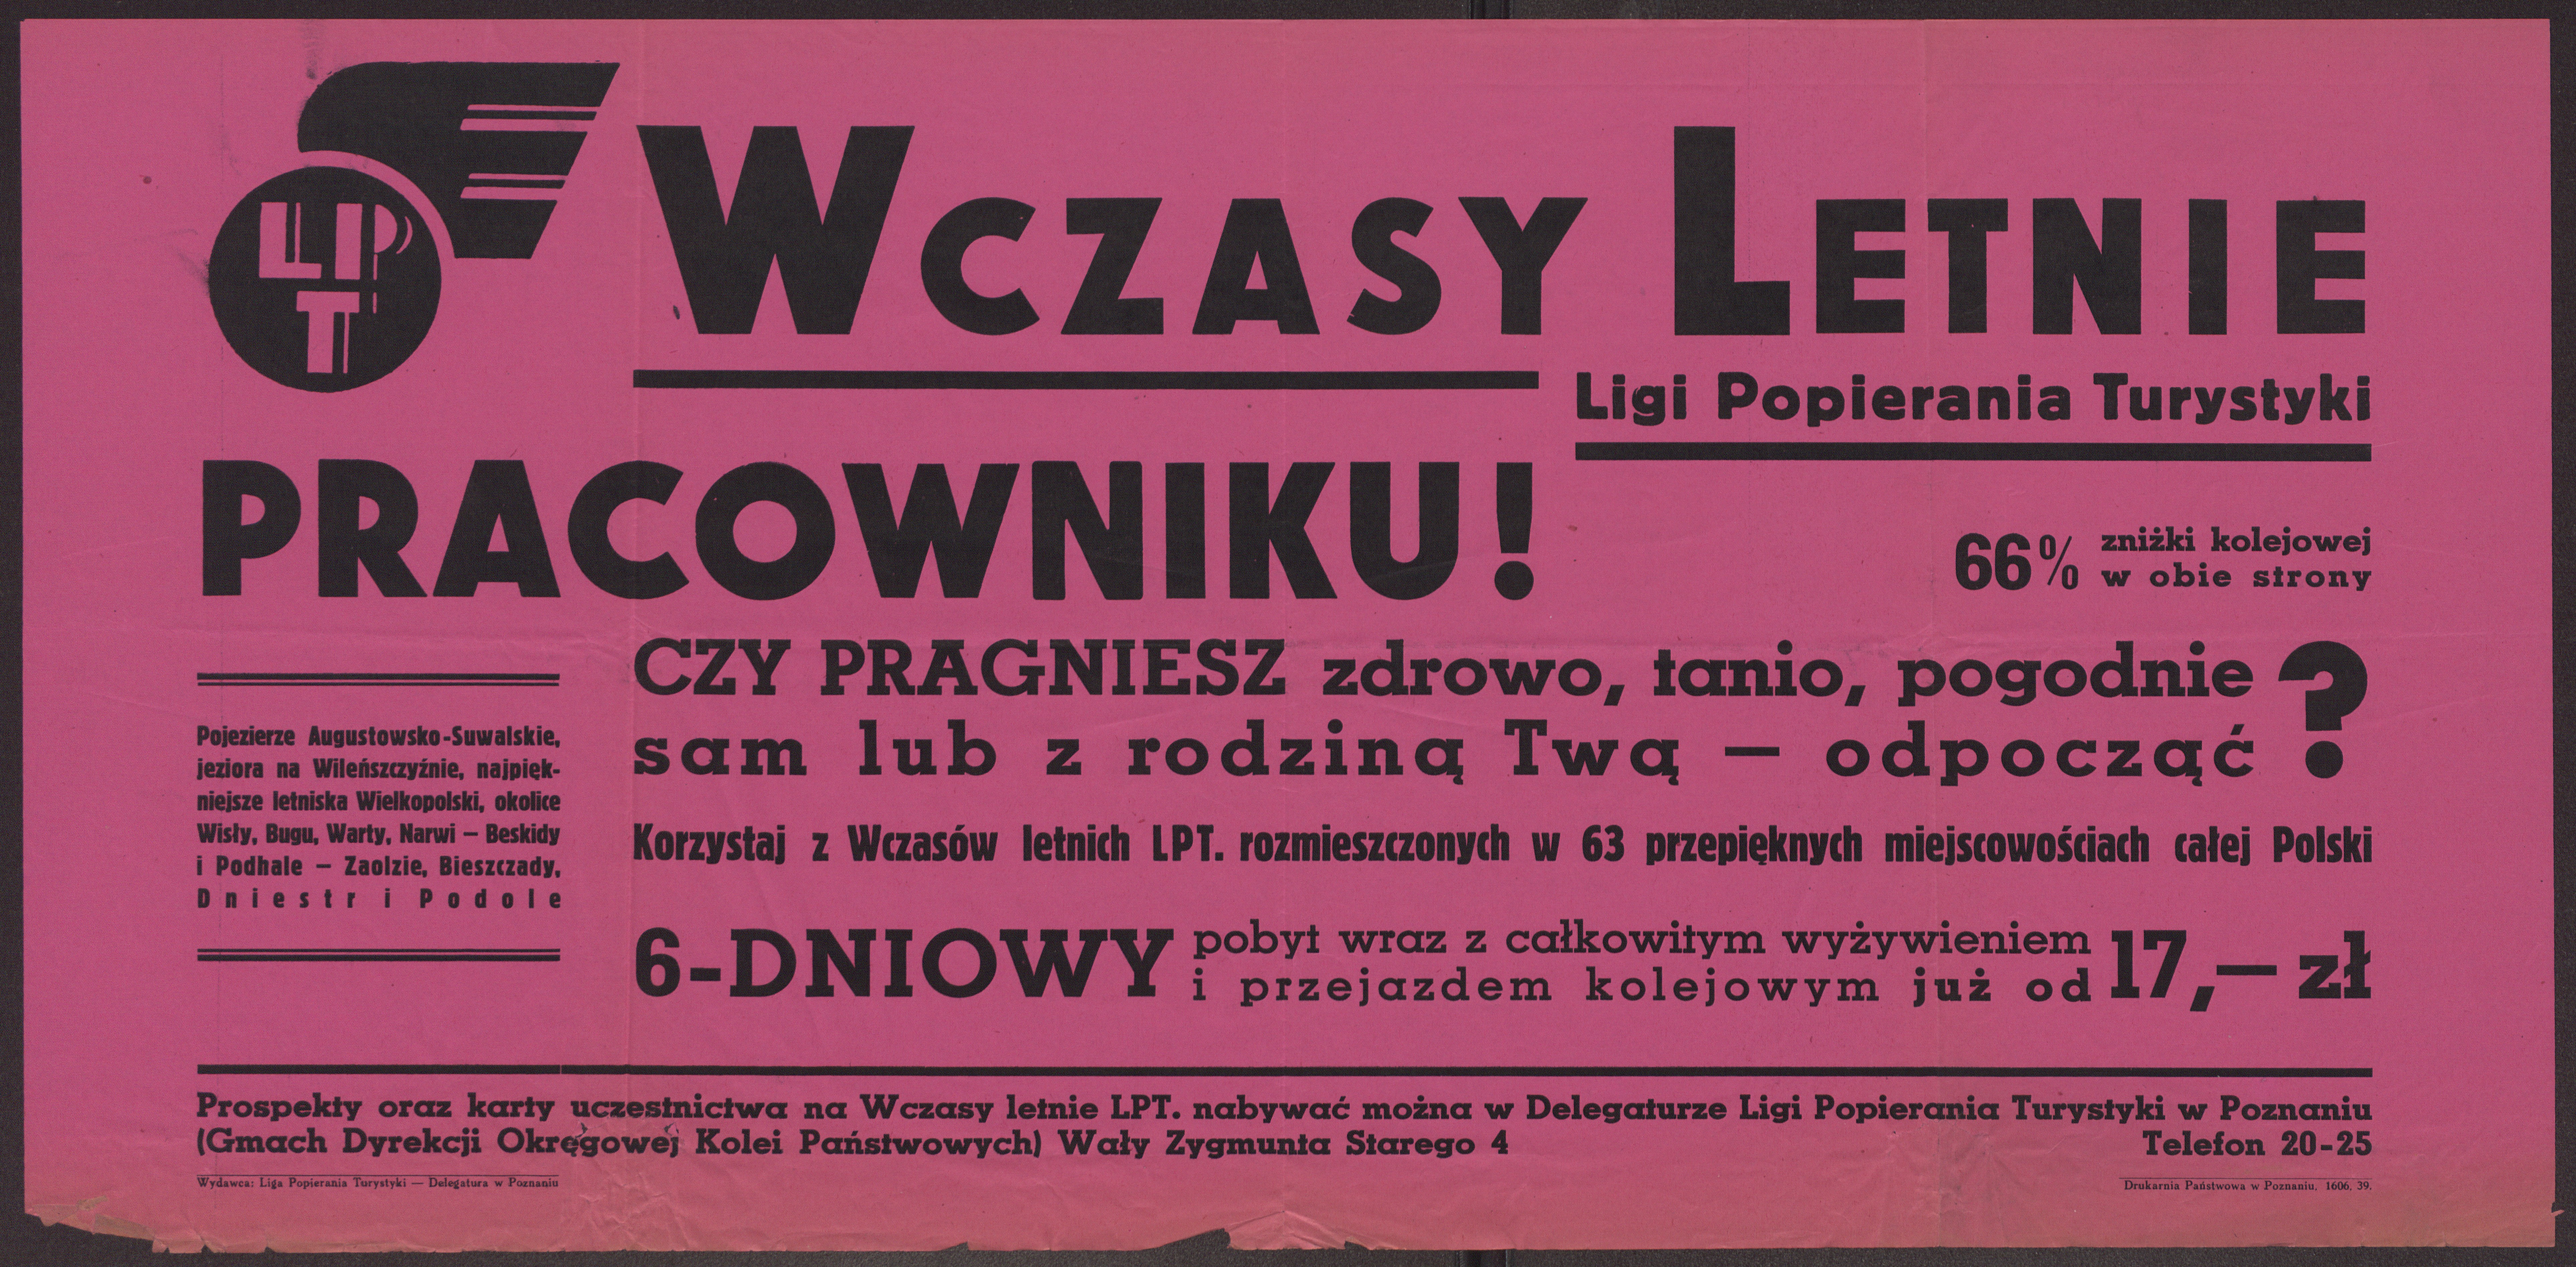 Wczasy letnie - PRACOWNIKU! folder reklamowy, 1939 rok, polona.pl/item/pracowniku